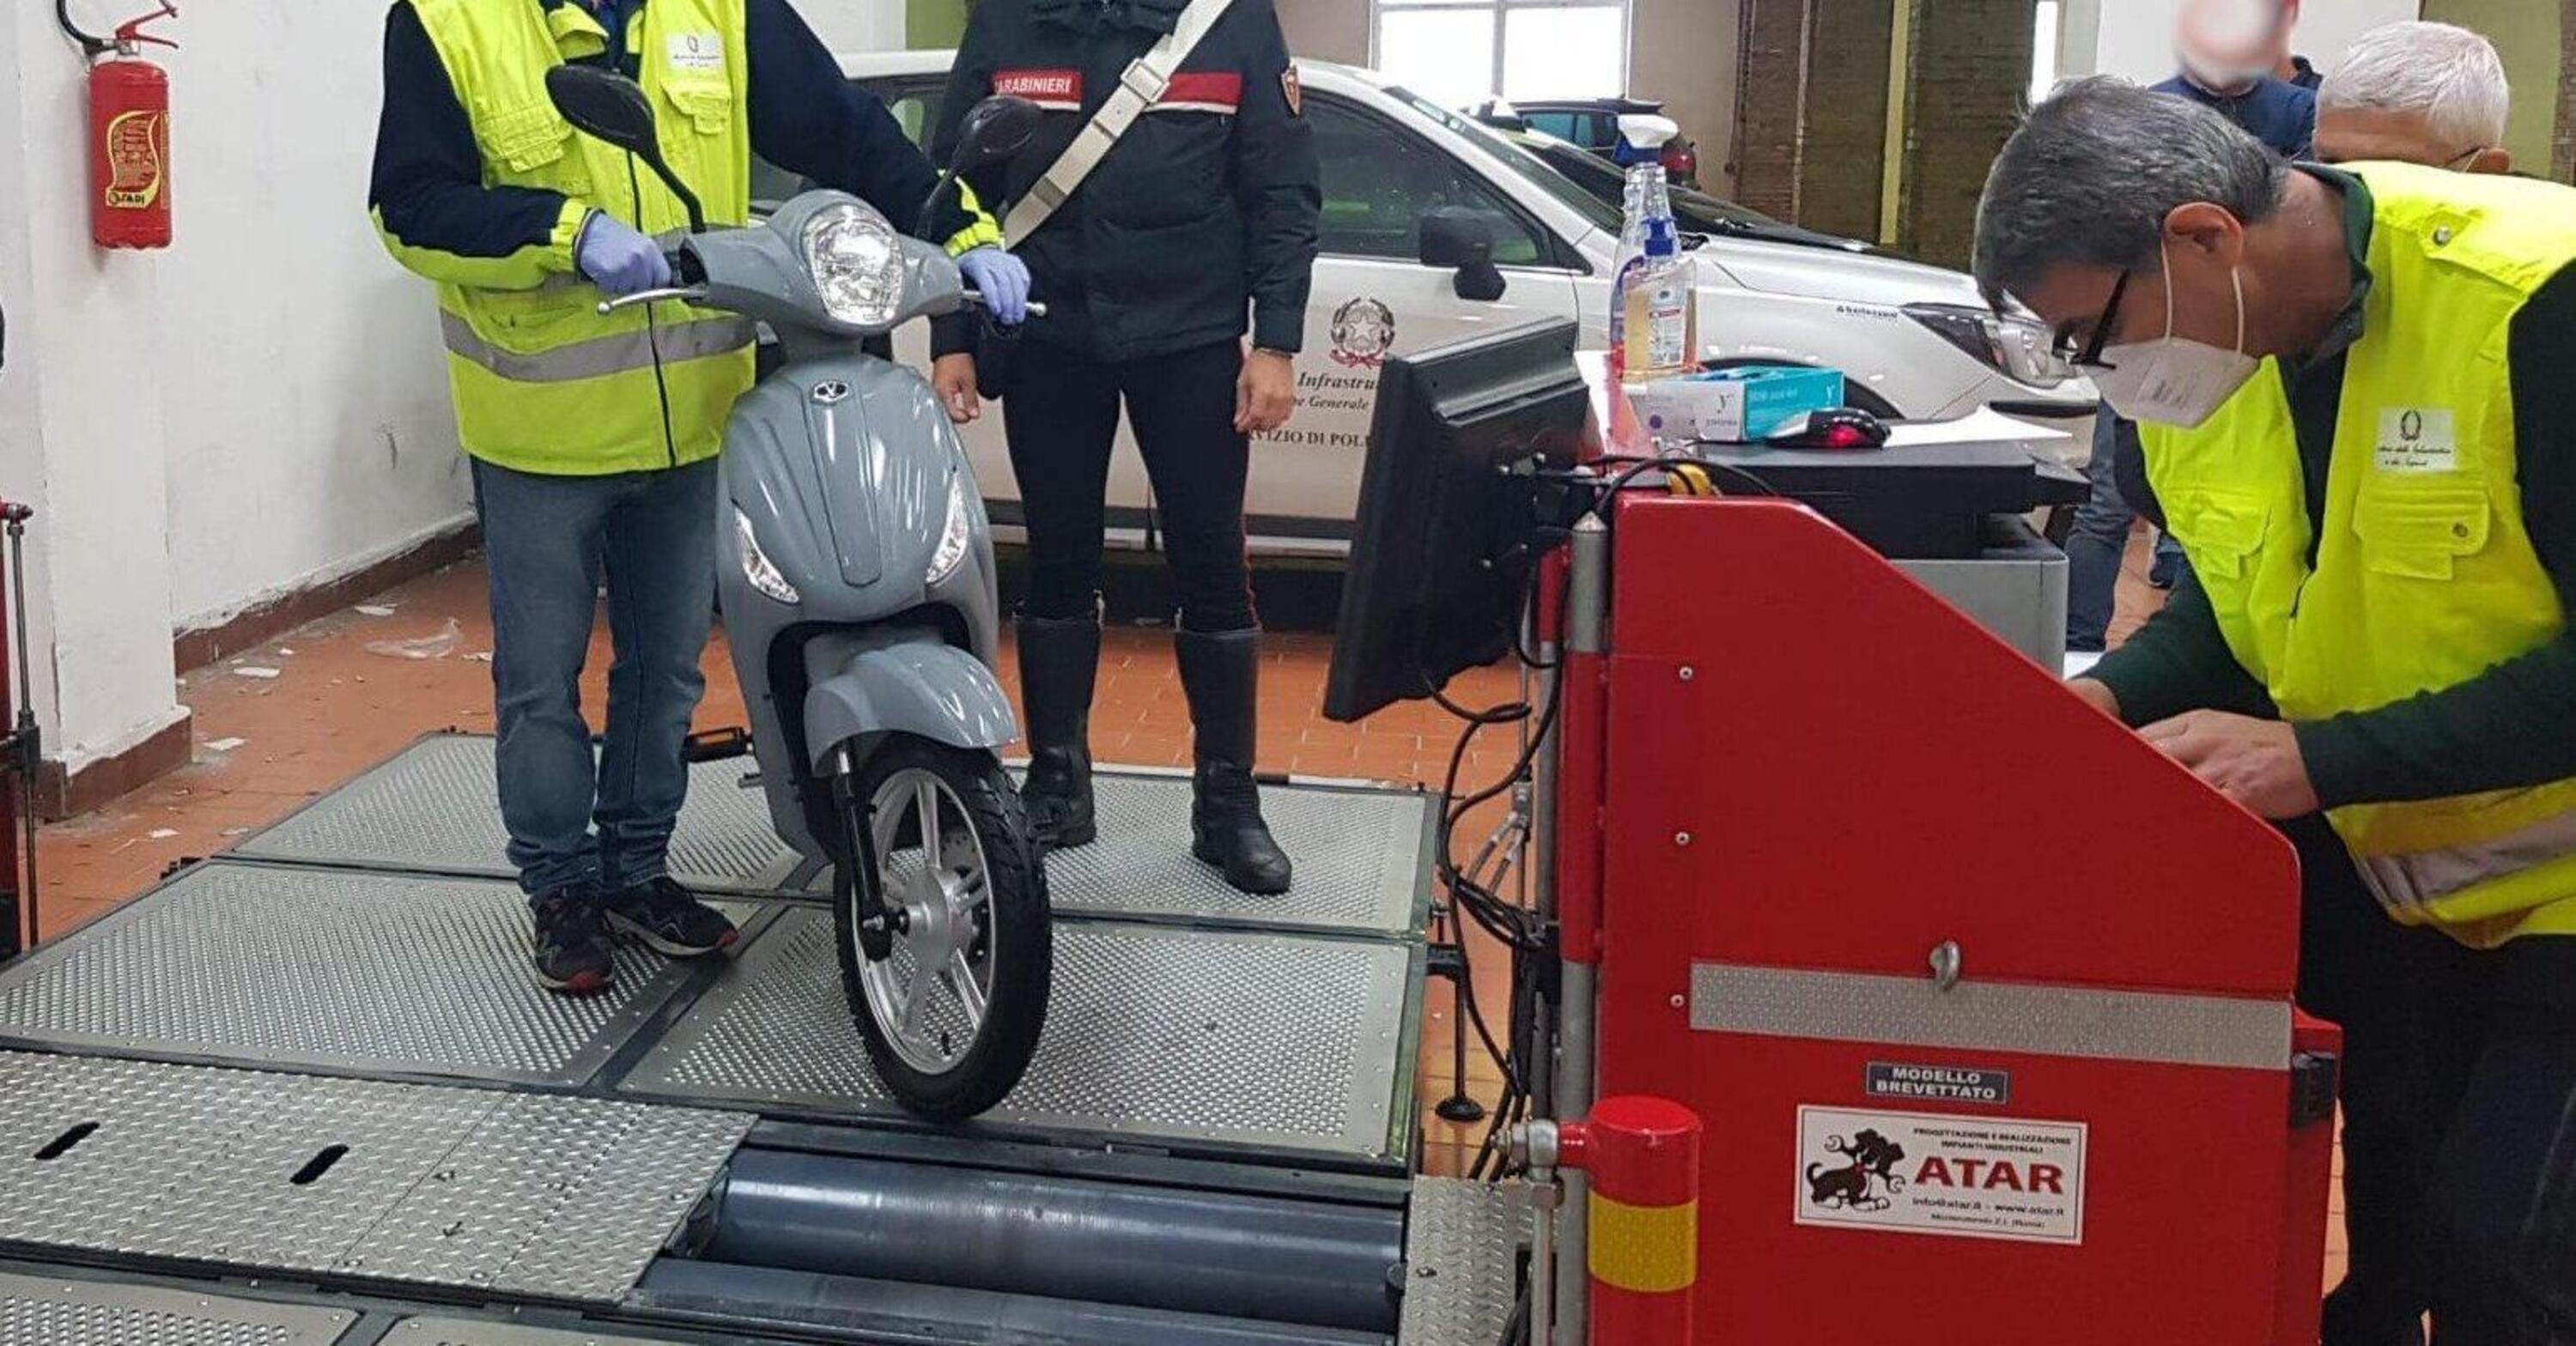 Castellammare di Stabia: sequestrate bici elettriche modificate come scooter